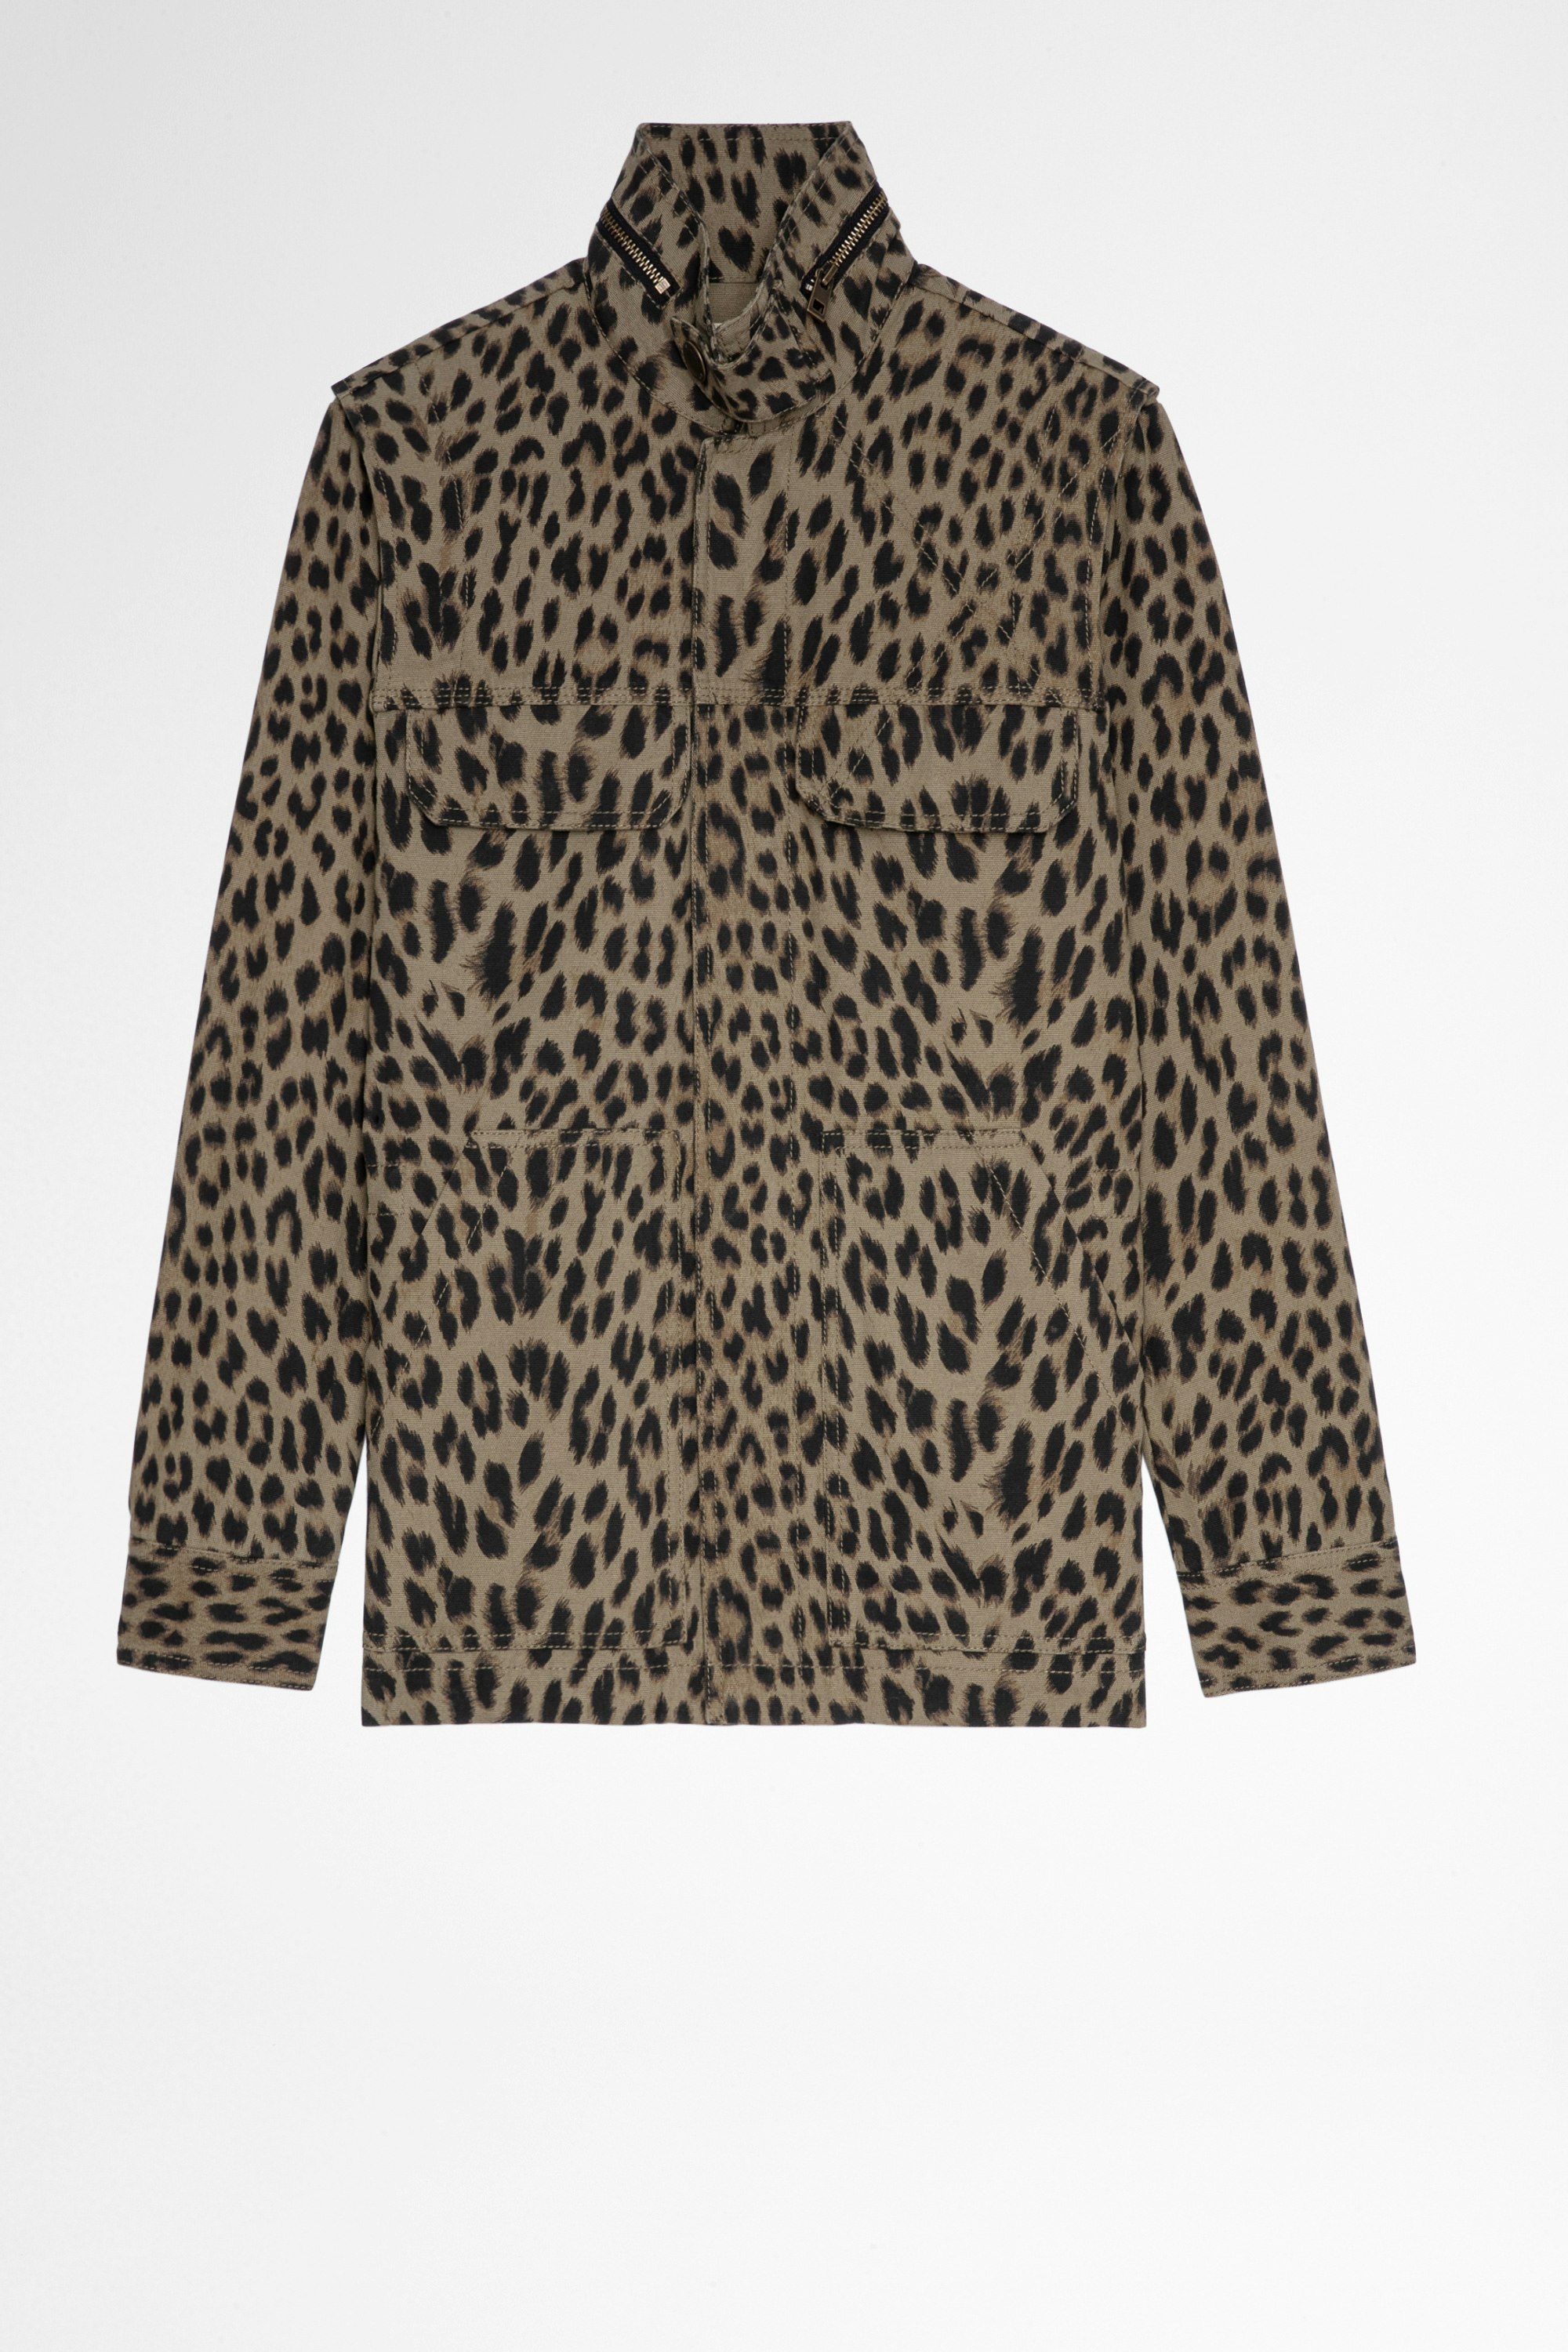 Jacke Kayaka Leopard Damenjacke aus khakifarbener Baumwolle mit Leoparden-Print. Hergestellt mit Fasern aus biologischem Anbau